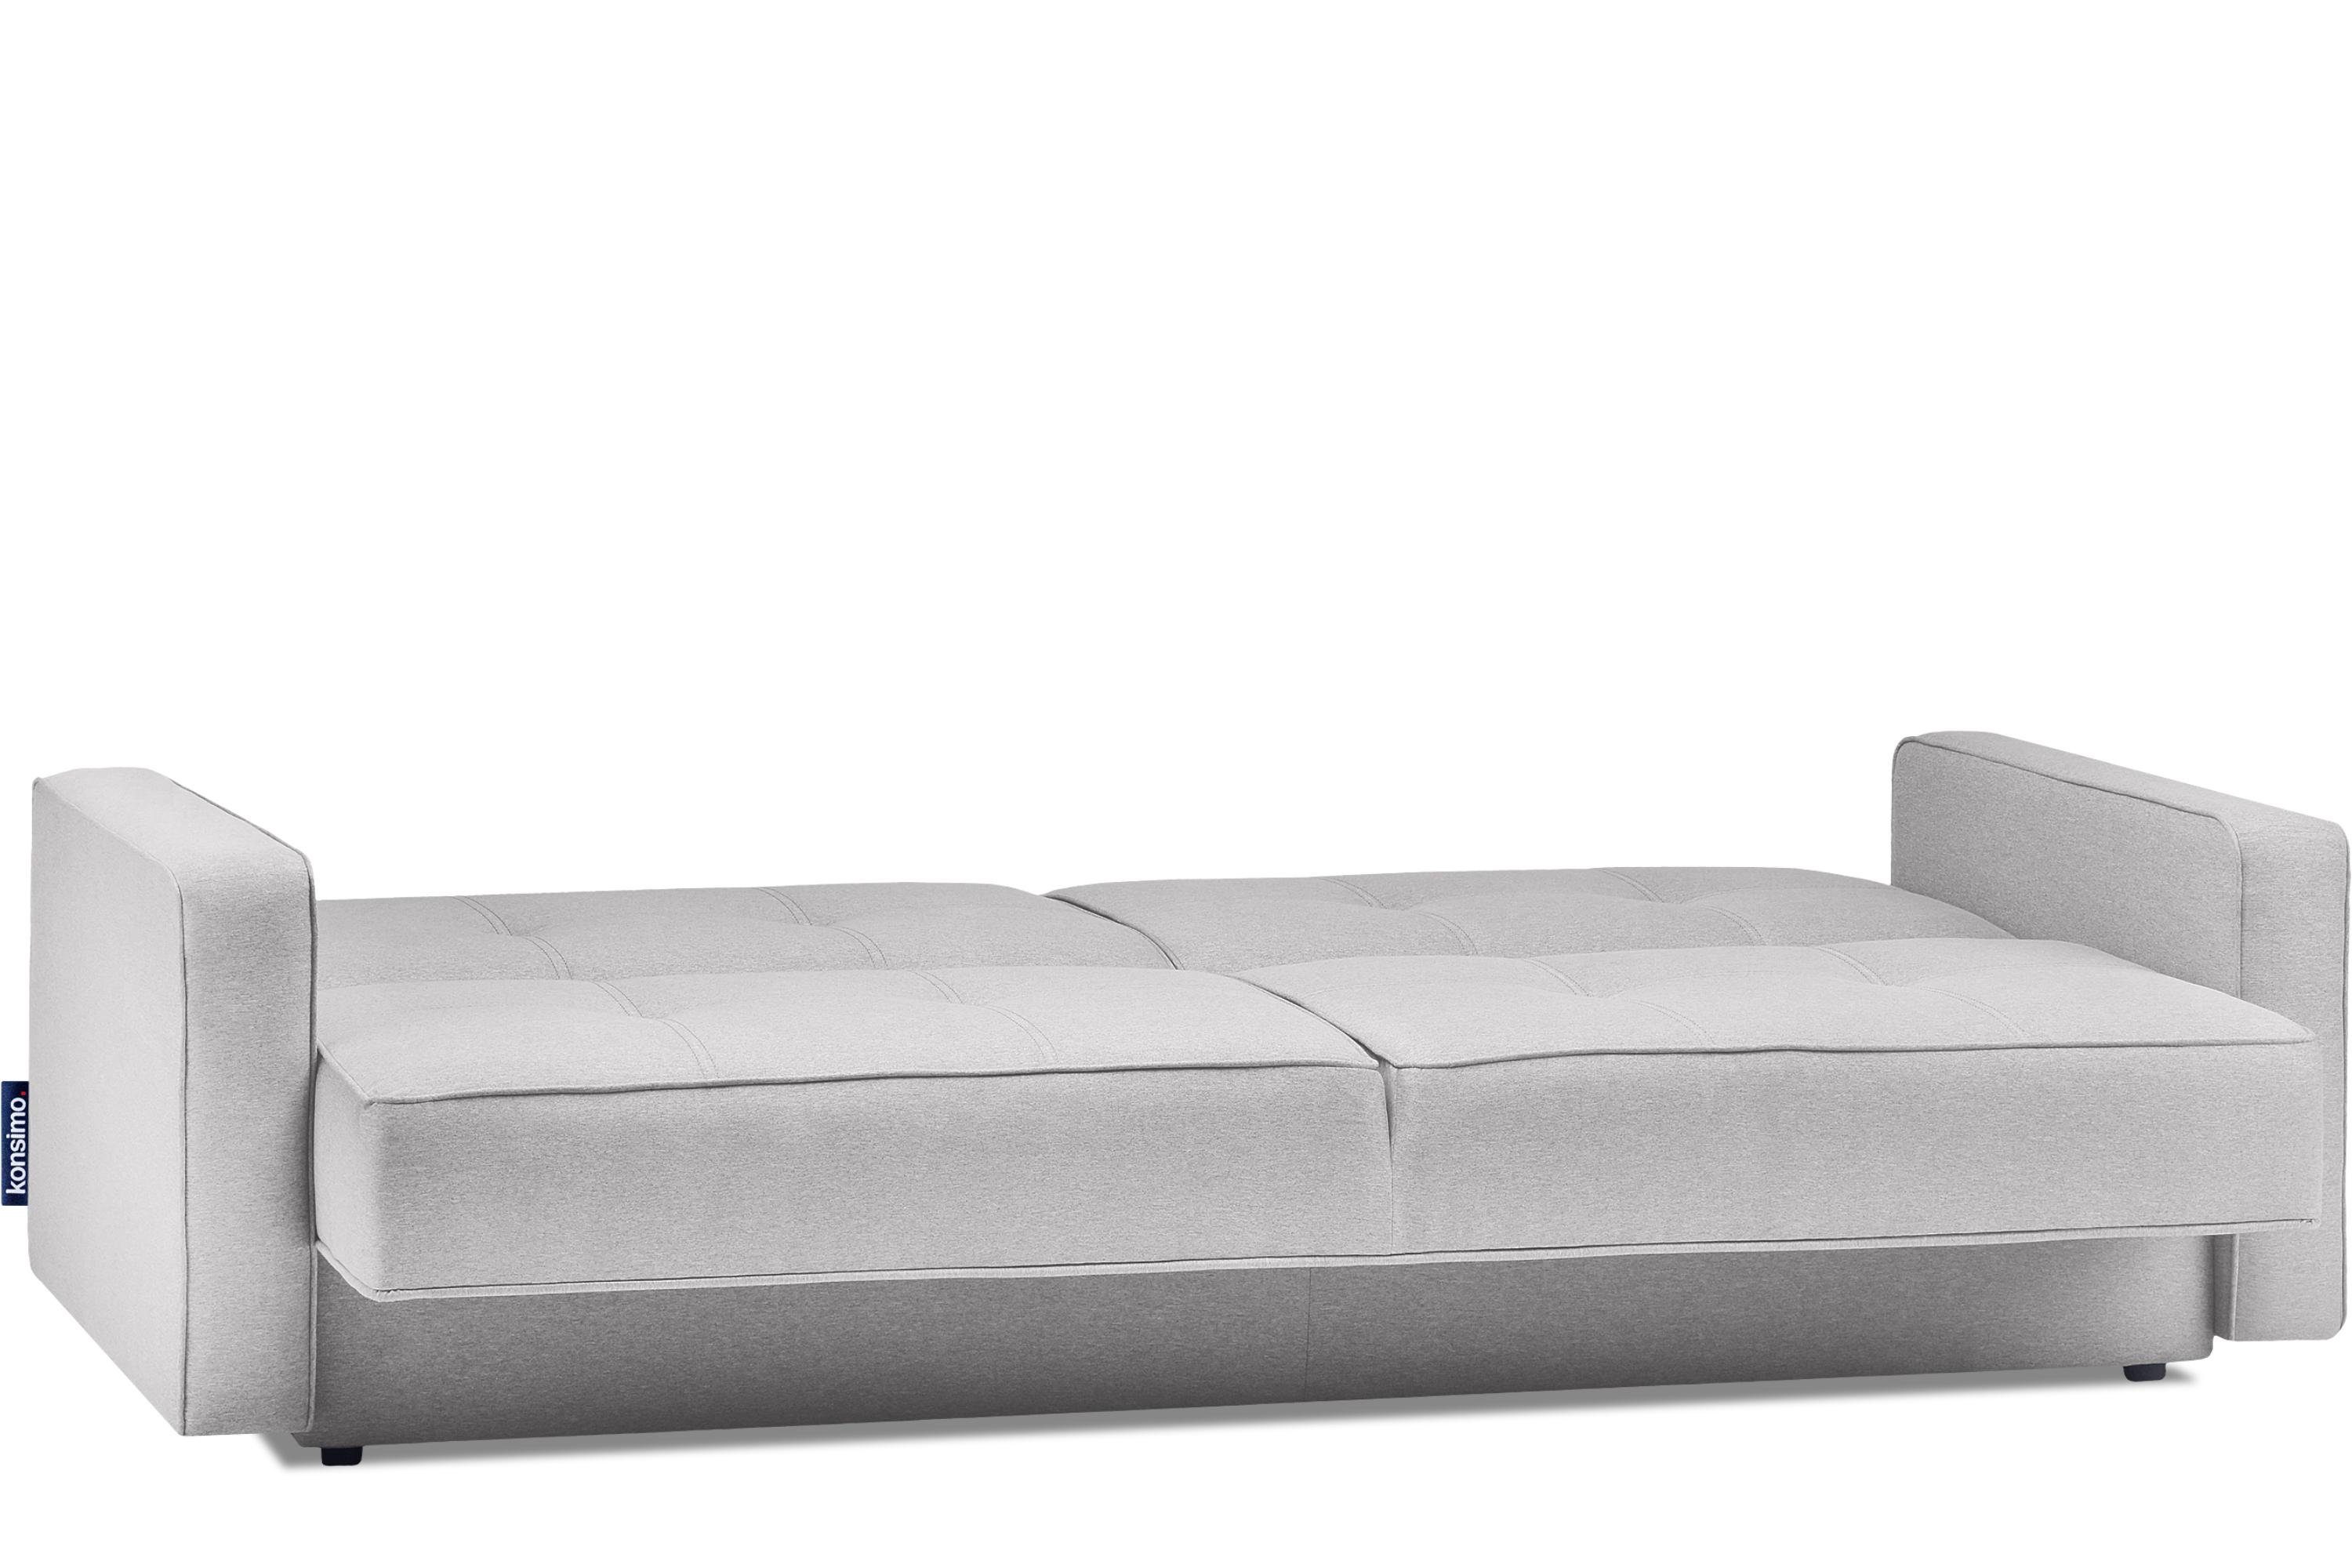 Konsimo Schlafsofa ORIO Sofa 3 Liegefläche: Wellenunterfederung, mit mit Schlaffunktion Personen, 219x90cm